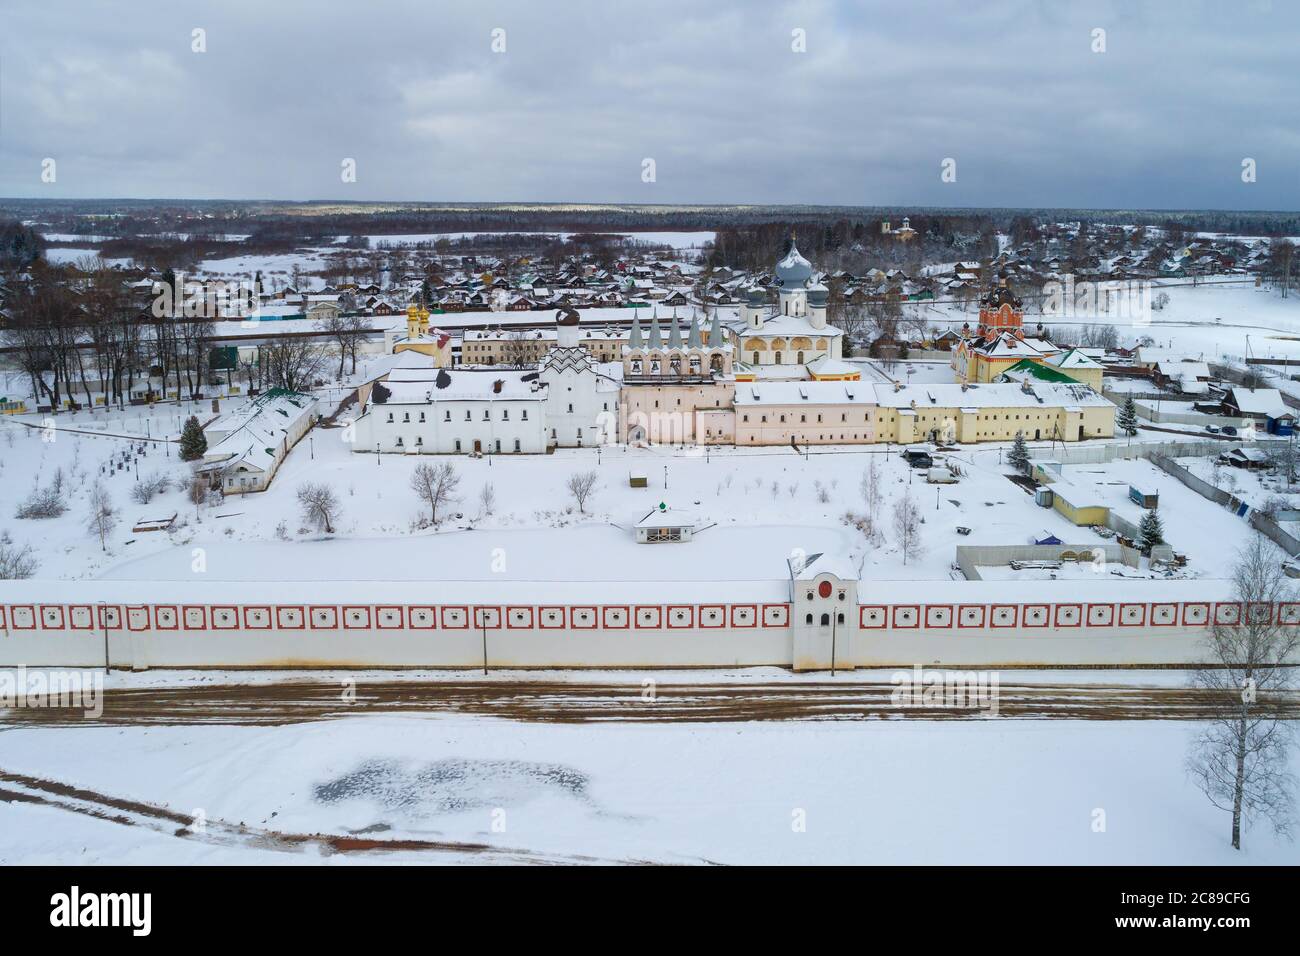 Au-dessus du monastère de Tikhvin Theotokos Assomption est un jour couvert de mars (levé aérien). Leningrad, Russie Banque D'Images